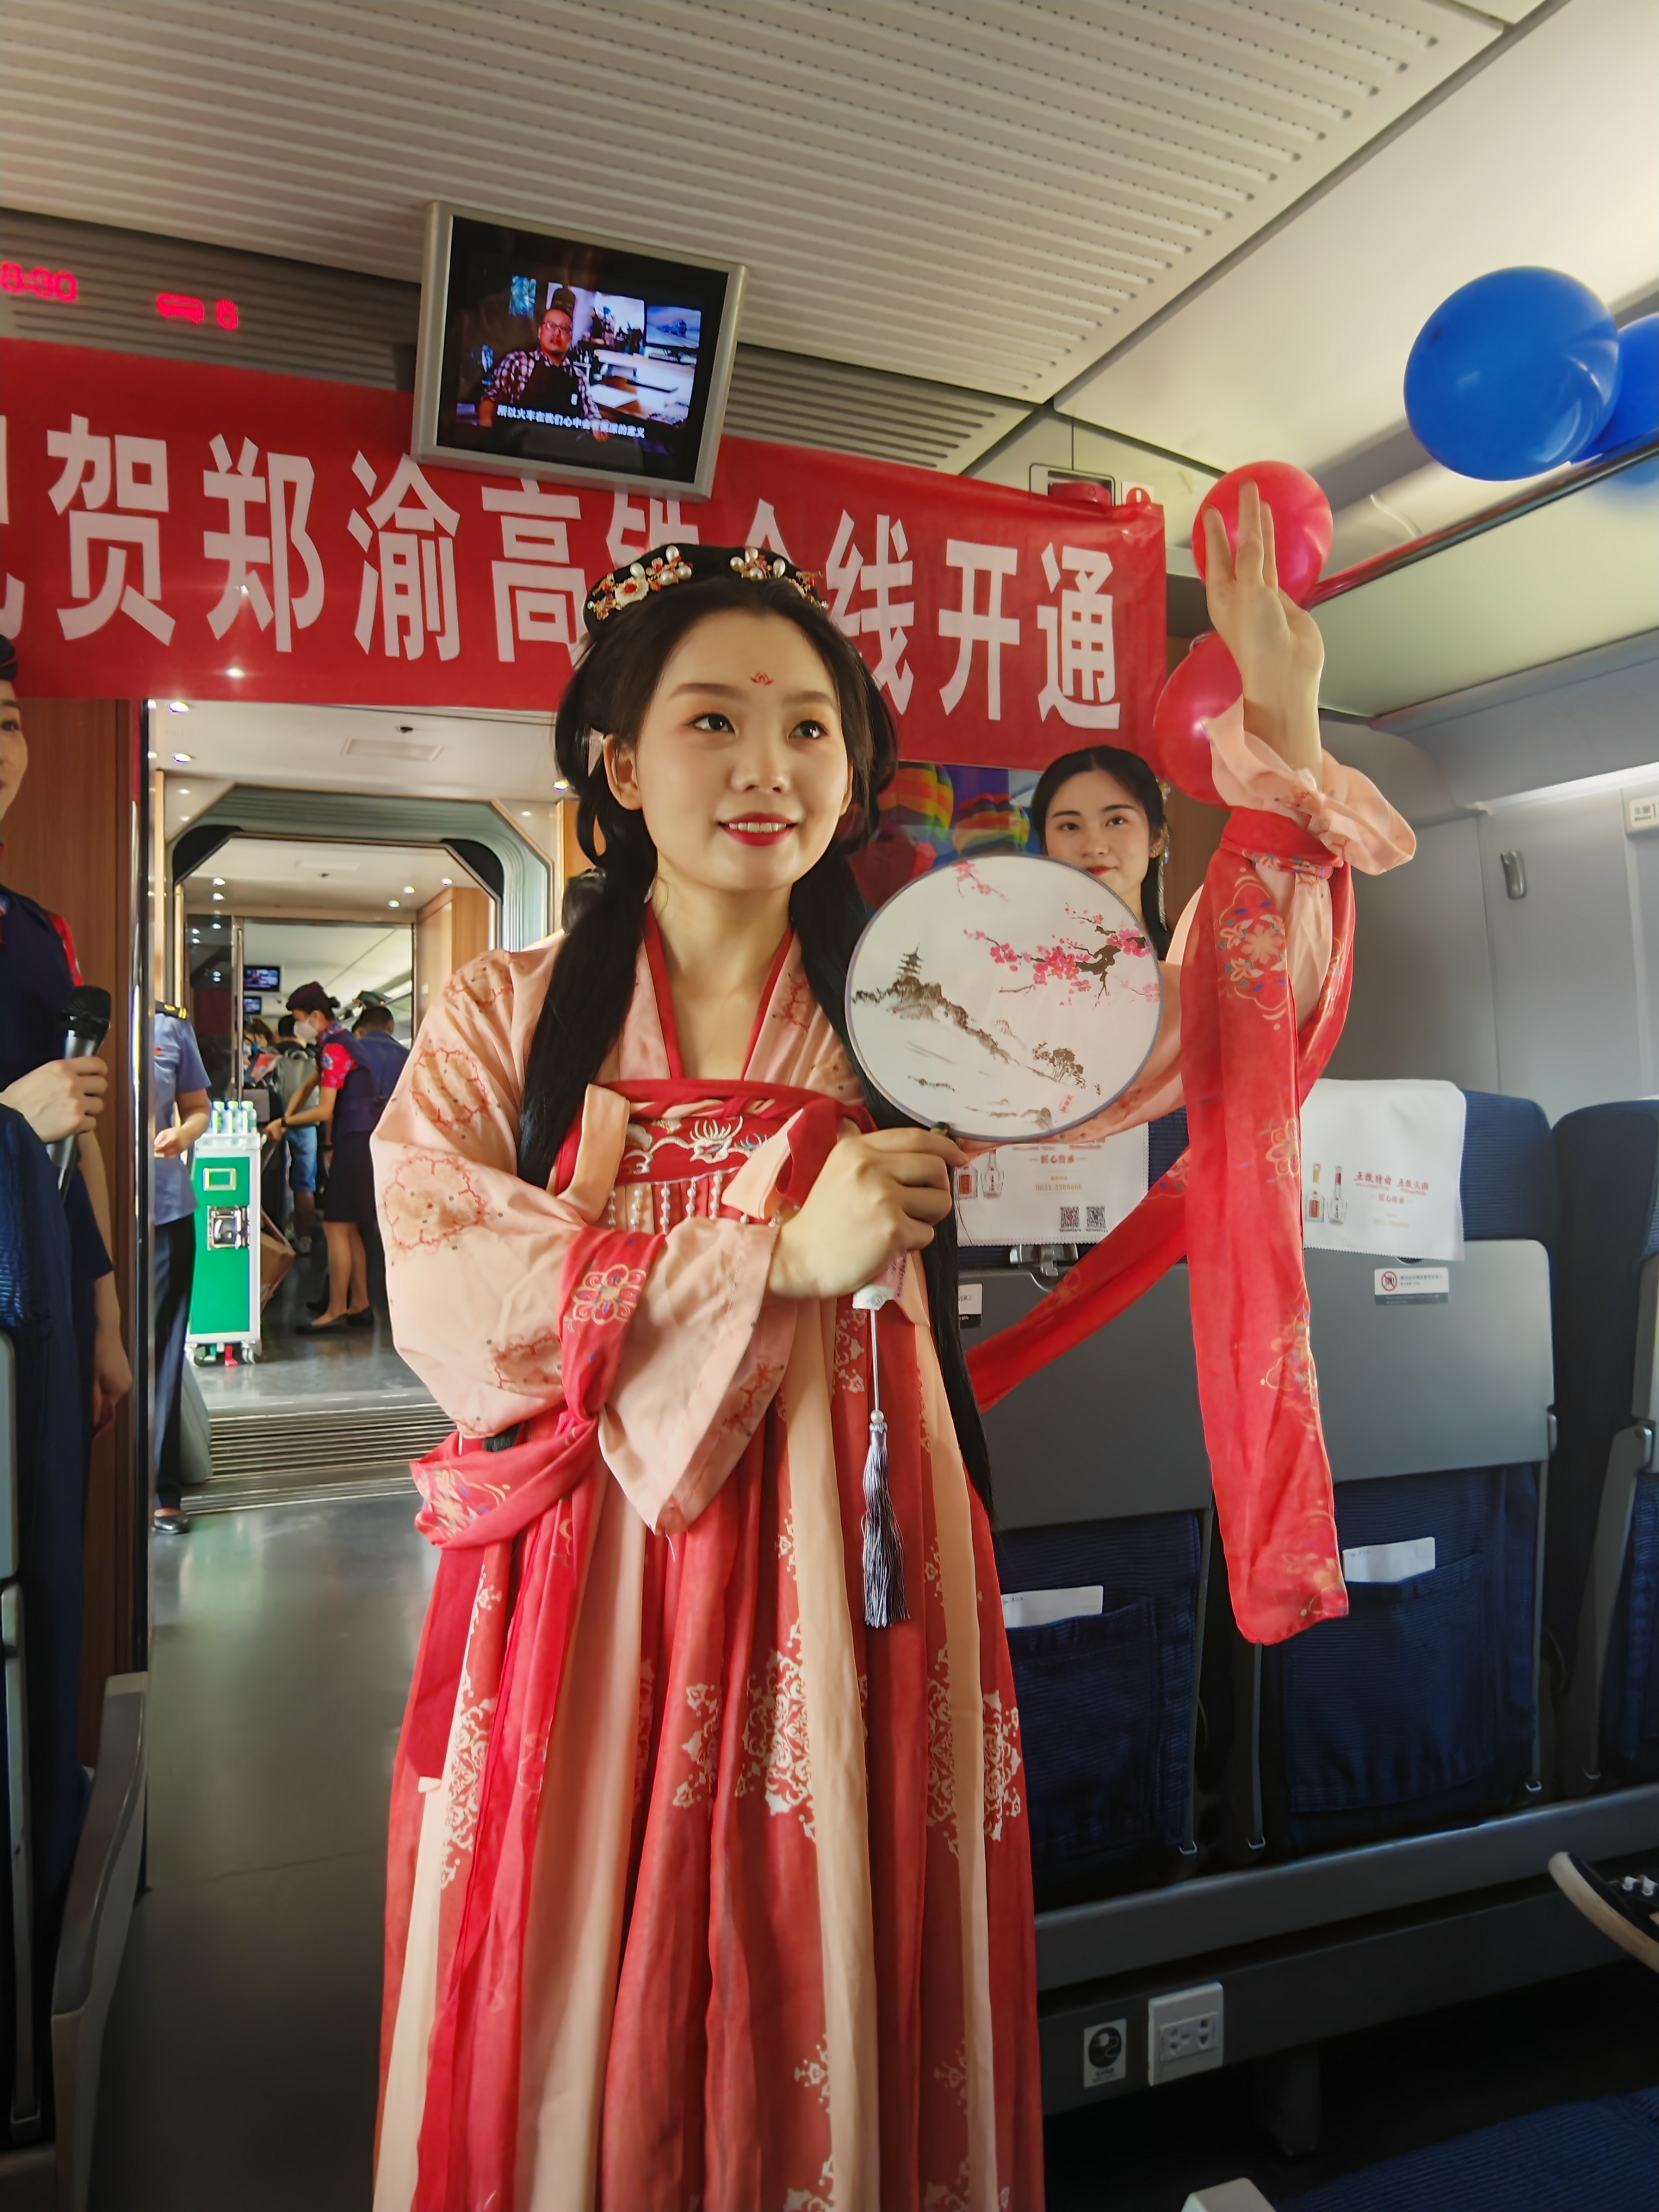 郑渝高铁首发列车：与您一起奔赴重庆之约